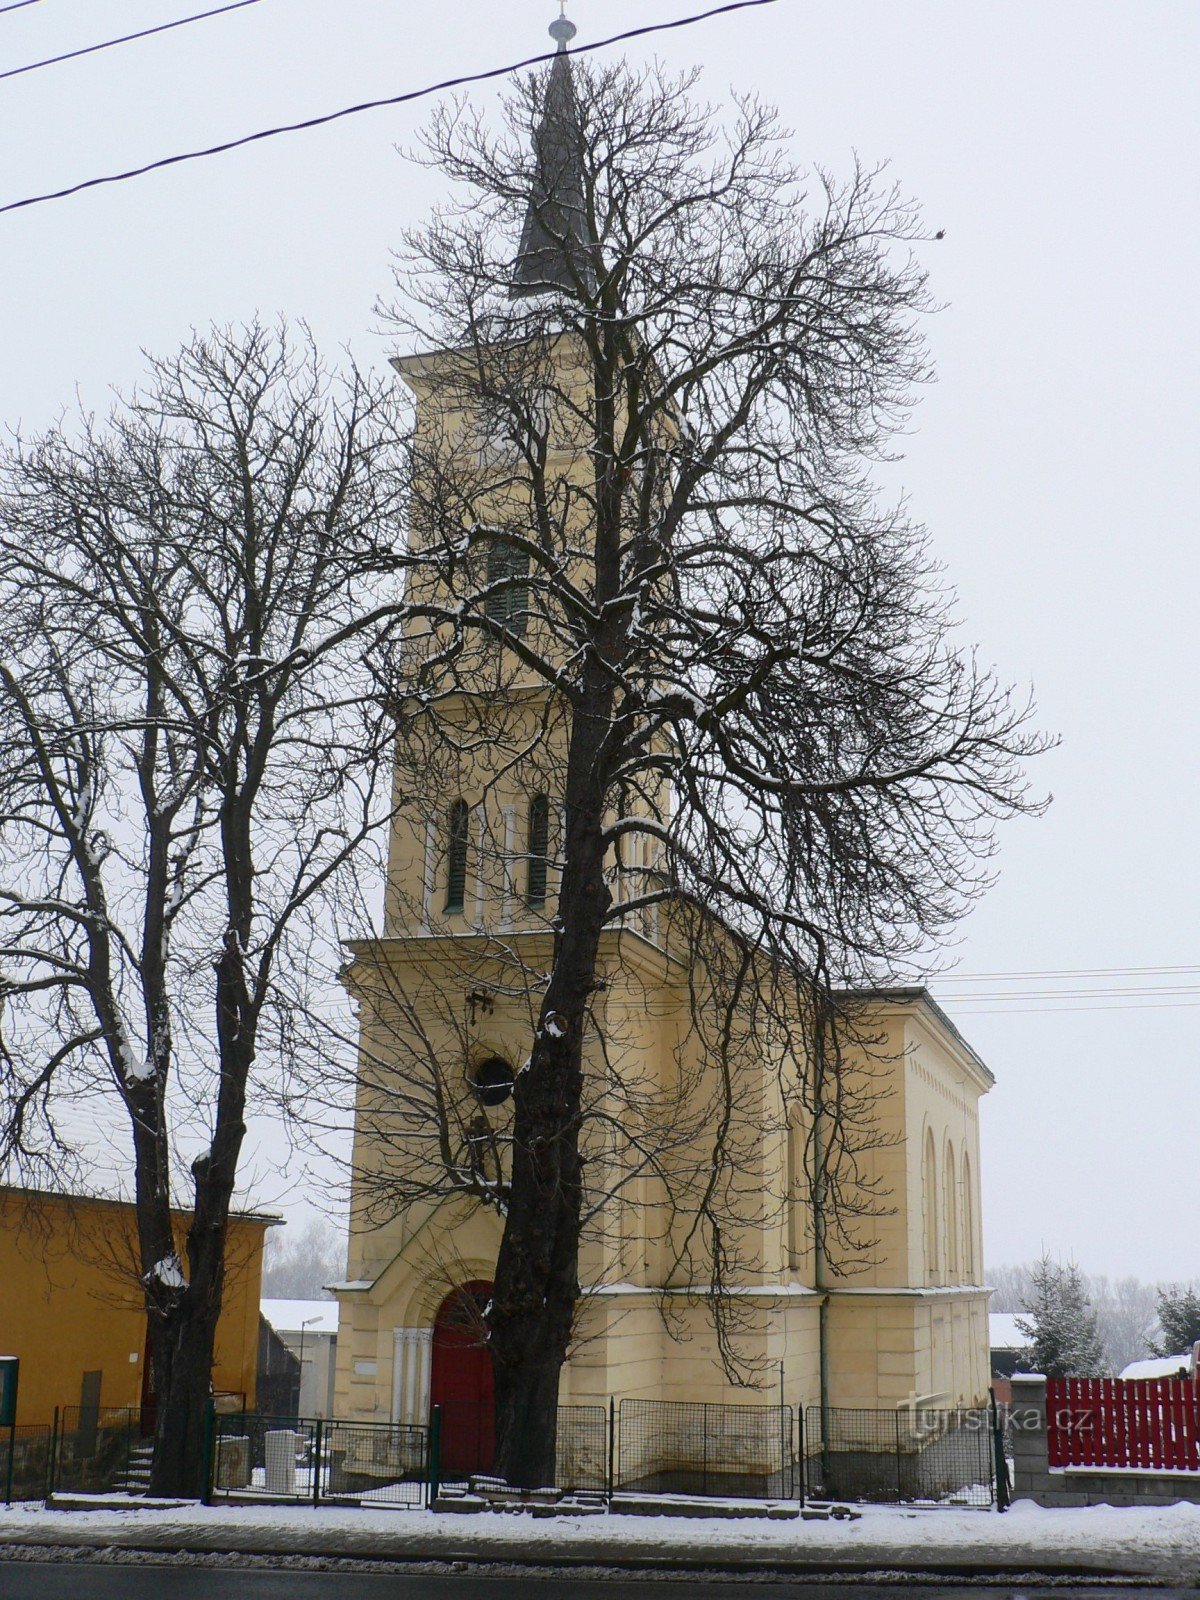 kościół został słabo sfotografowany - jest schowany za drzewami